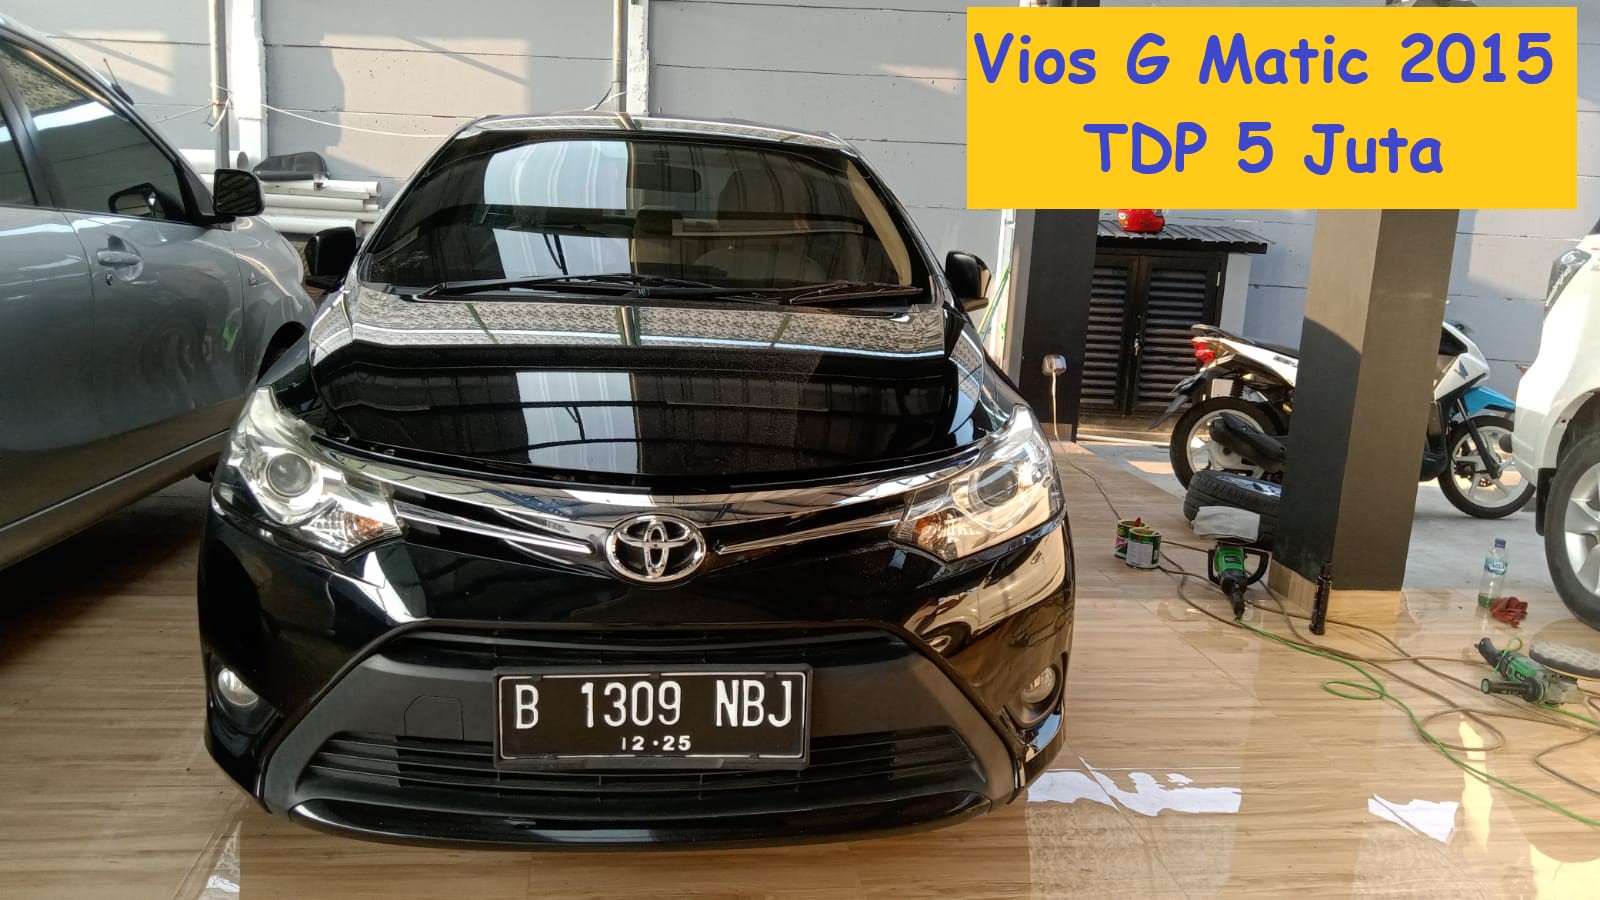 Toyota Vios G 1.5 Matic Tahun 2015 Tangan Pertama Warna Hitam metalik kondisi Mulus Terawat Sangat istimewa